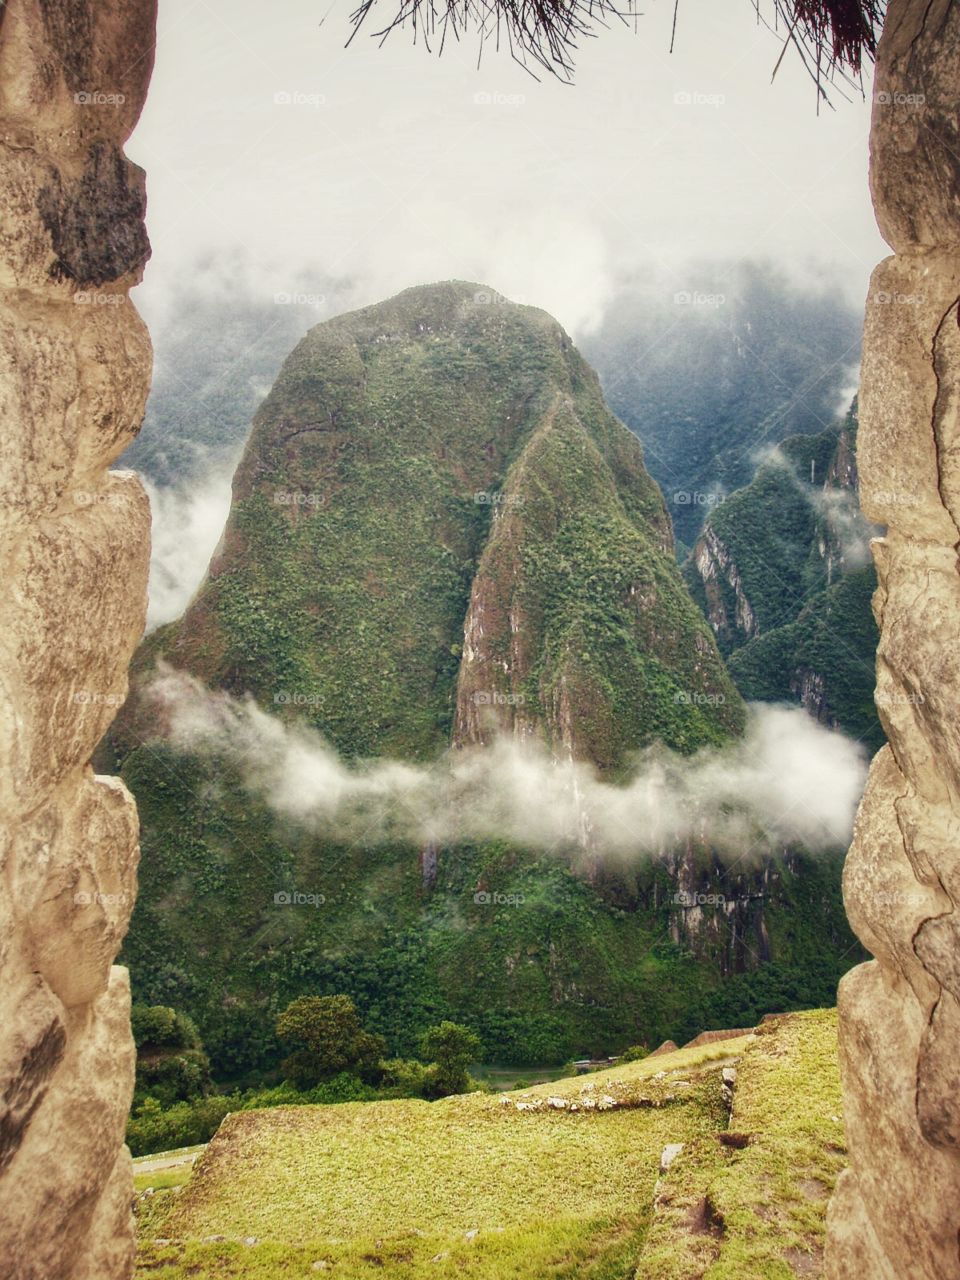 Clouds surrounding a mountain at Machu Picchu